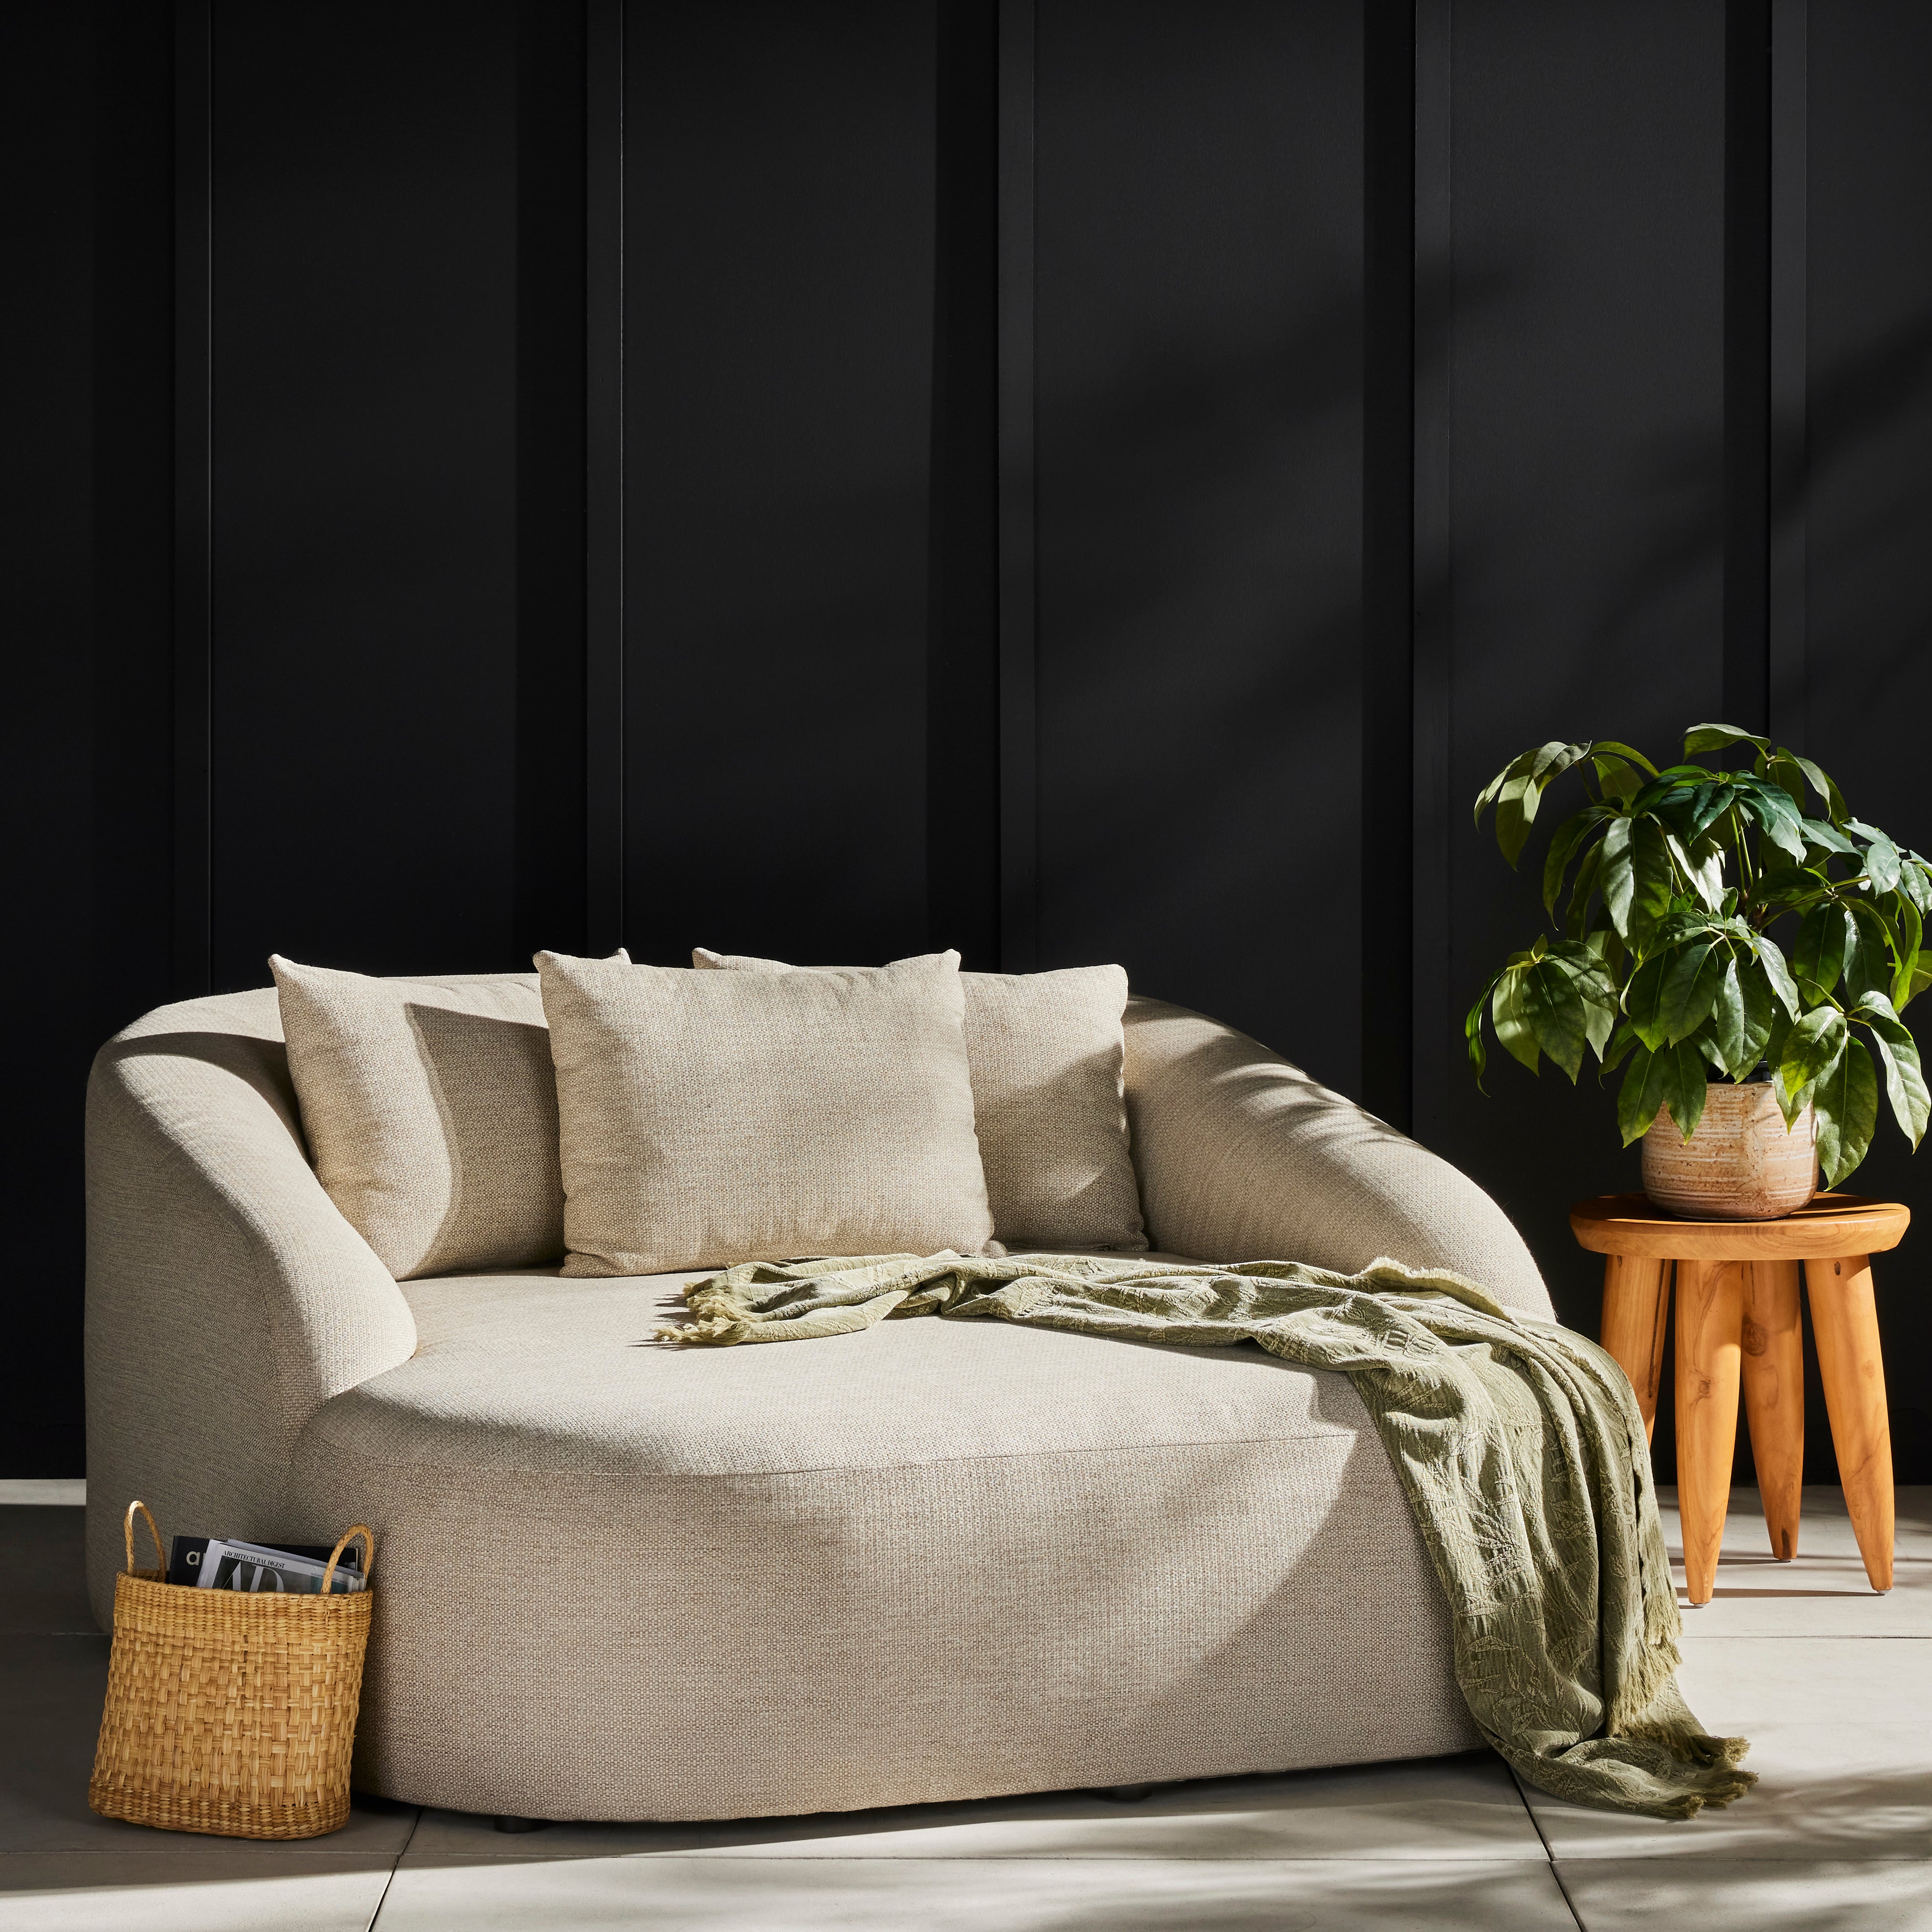 🔝 Online garden furniture store · Elegance and comfort – MAMBA MUEBLES -  Muebles de jardín